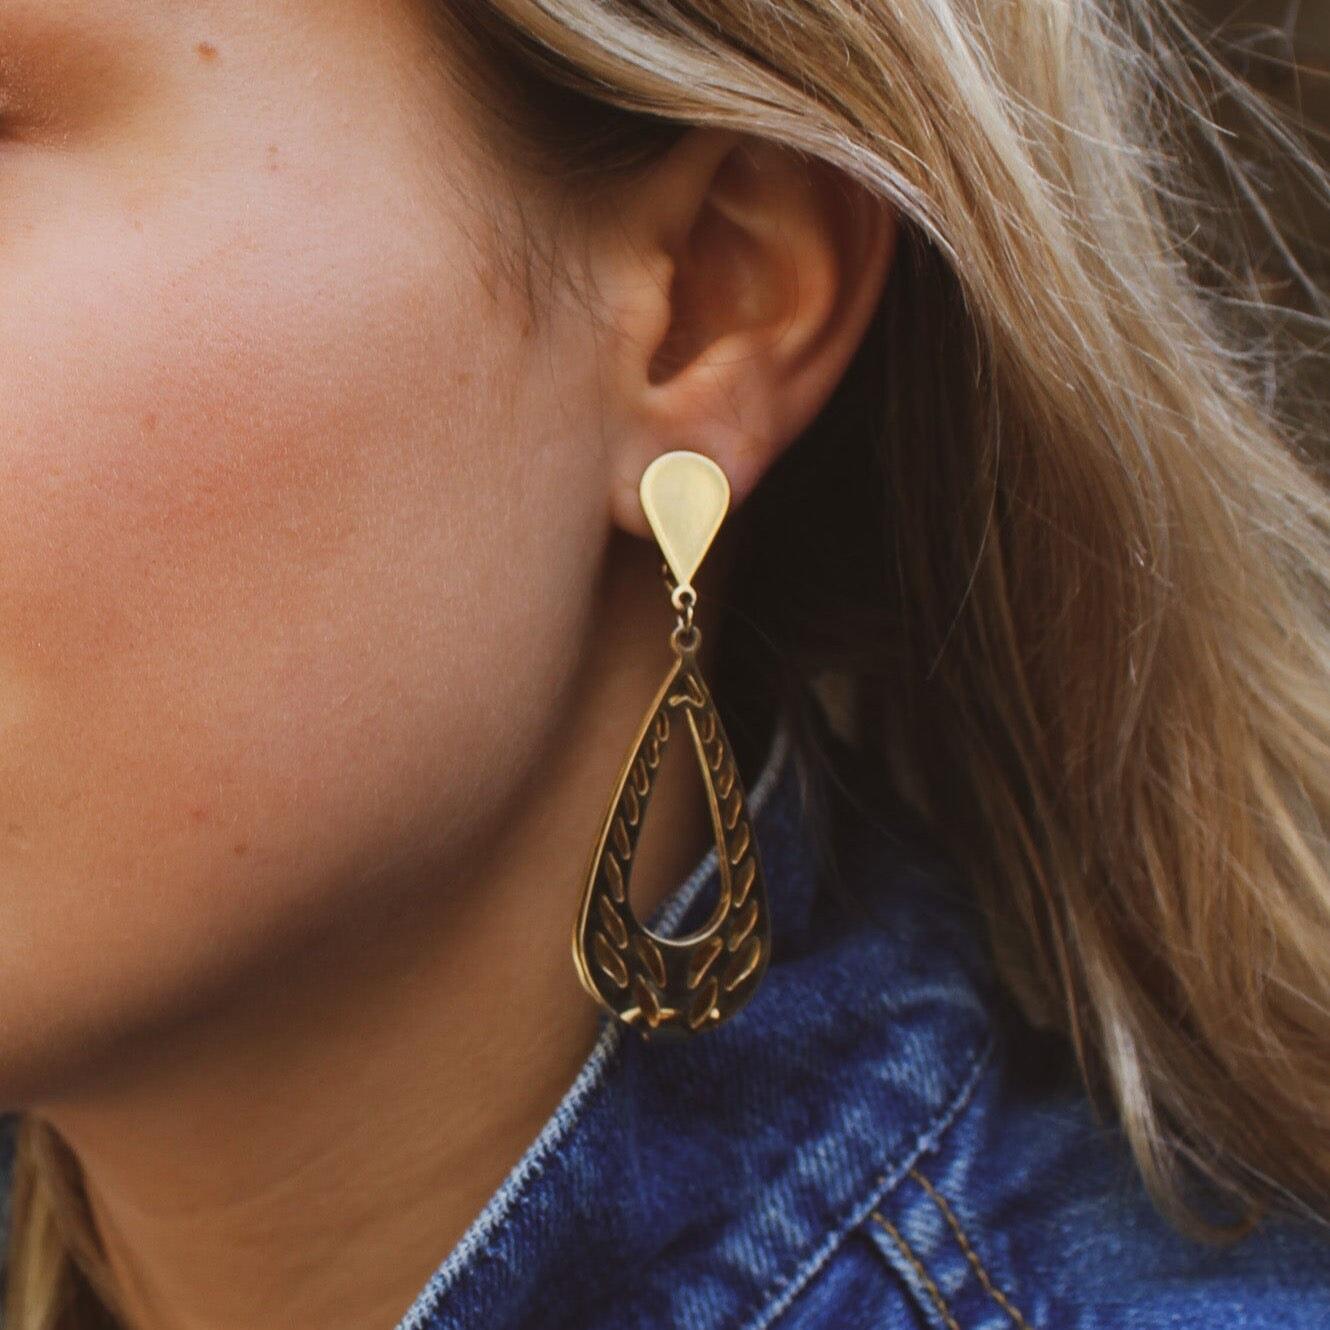 Ces superbes boucles d'oreilles, fabriquées aux États-Unis en métal doré, sont l'incarnation de l'élégance intemporelle. Elles proviennent de l'une des marques de bijoux fantaisie les plus prisées au monde,

Trifari. Fondée en 1918 par l'immigrant